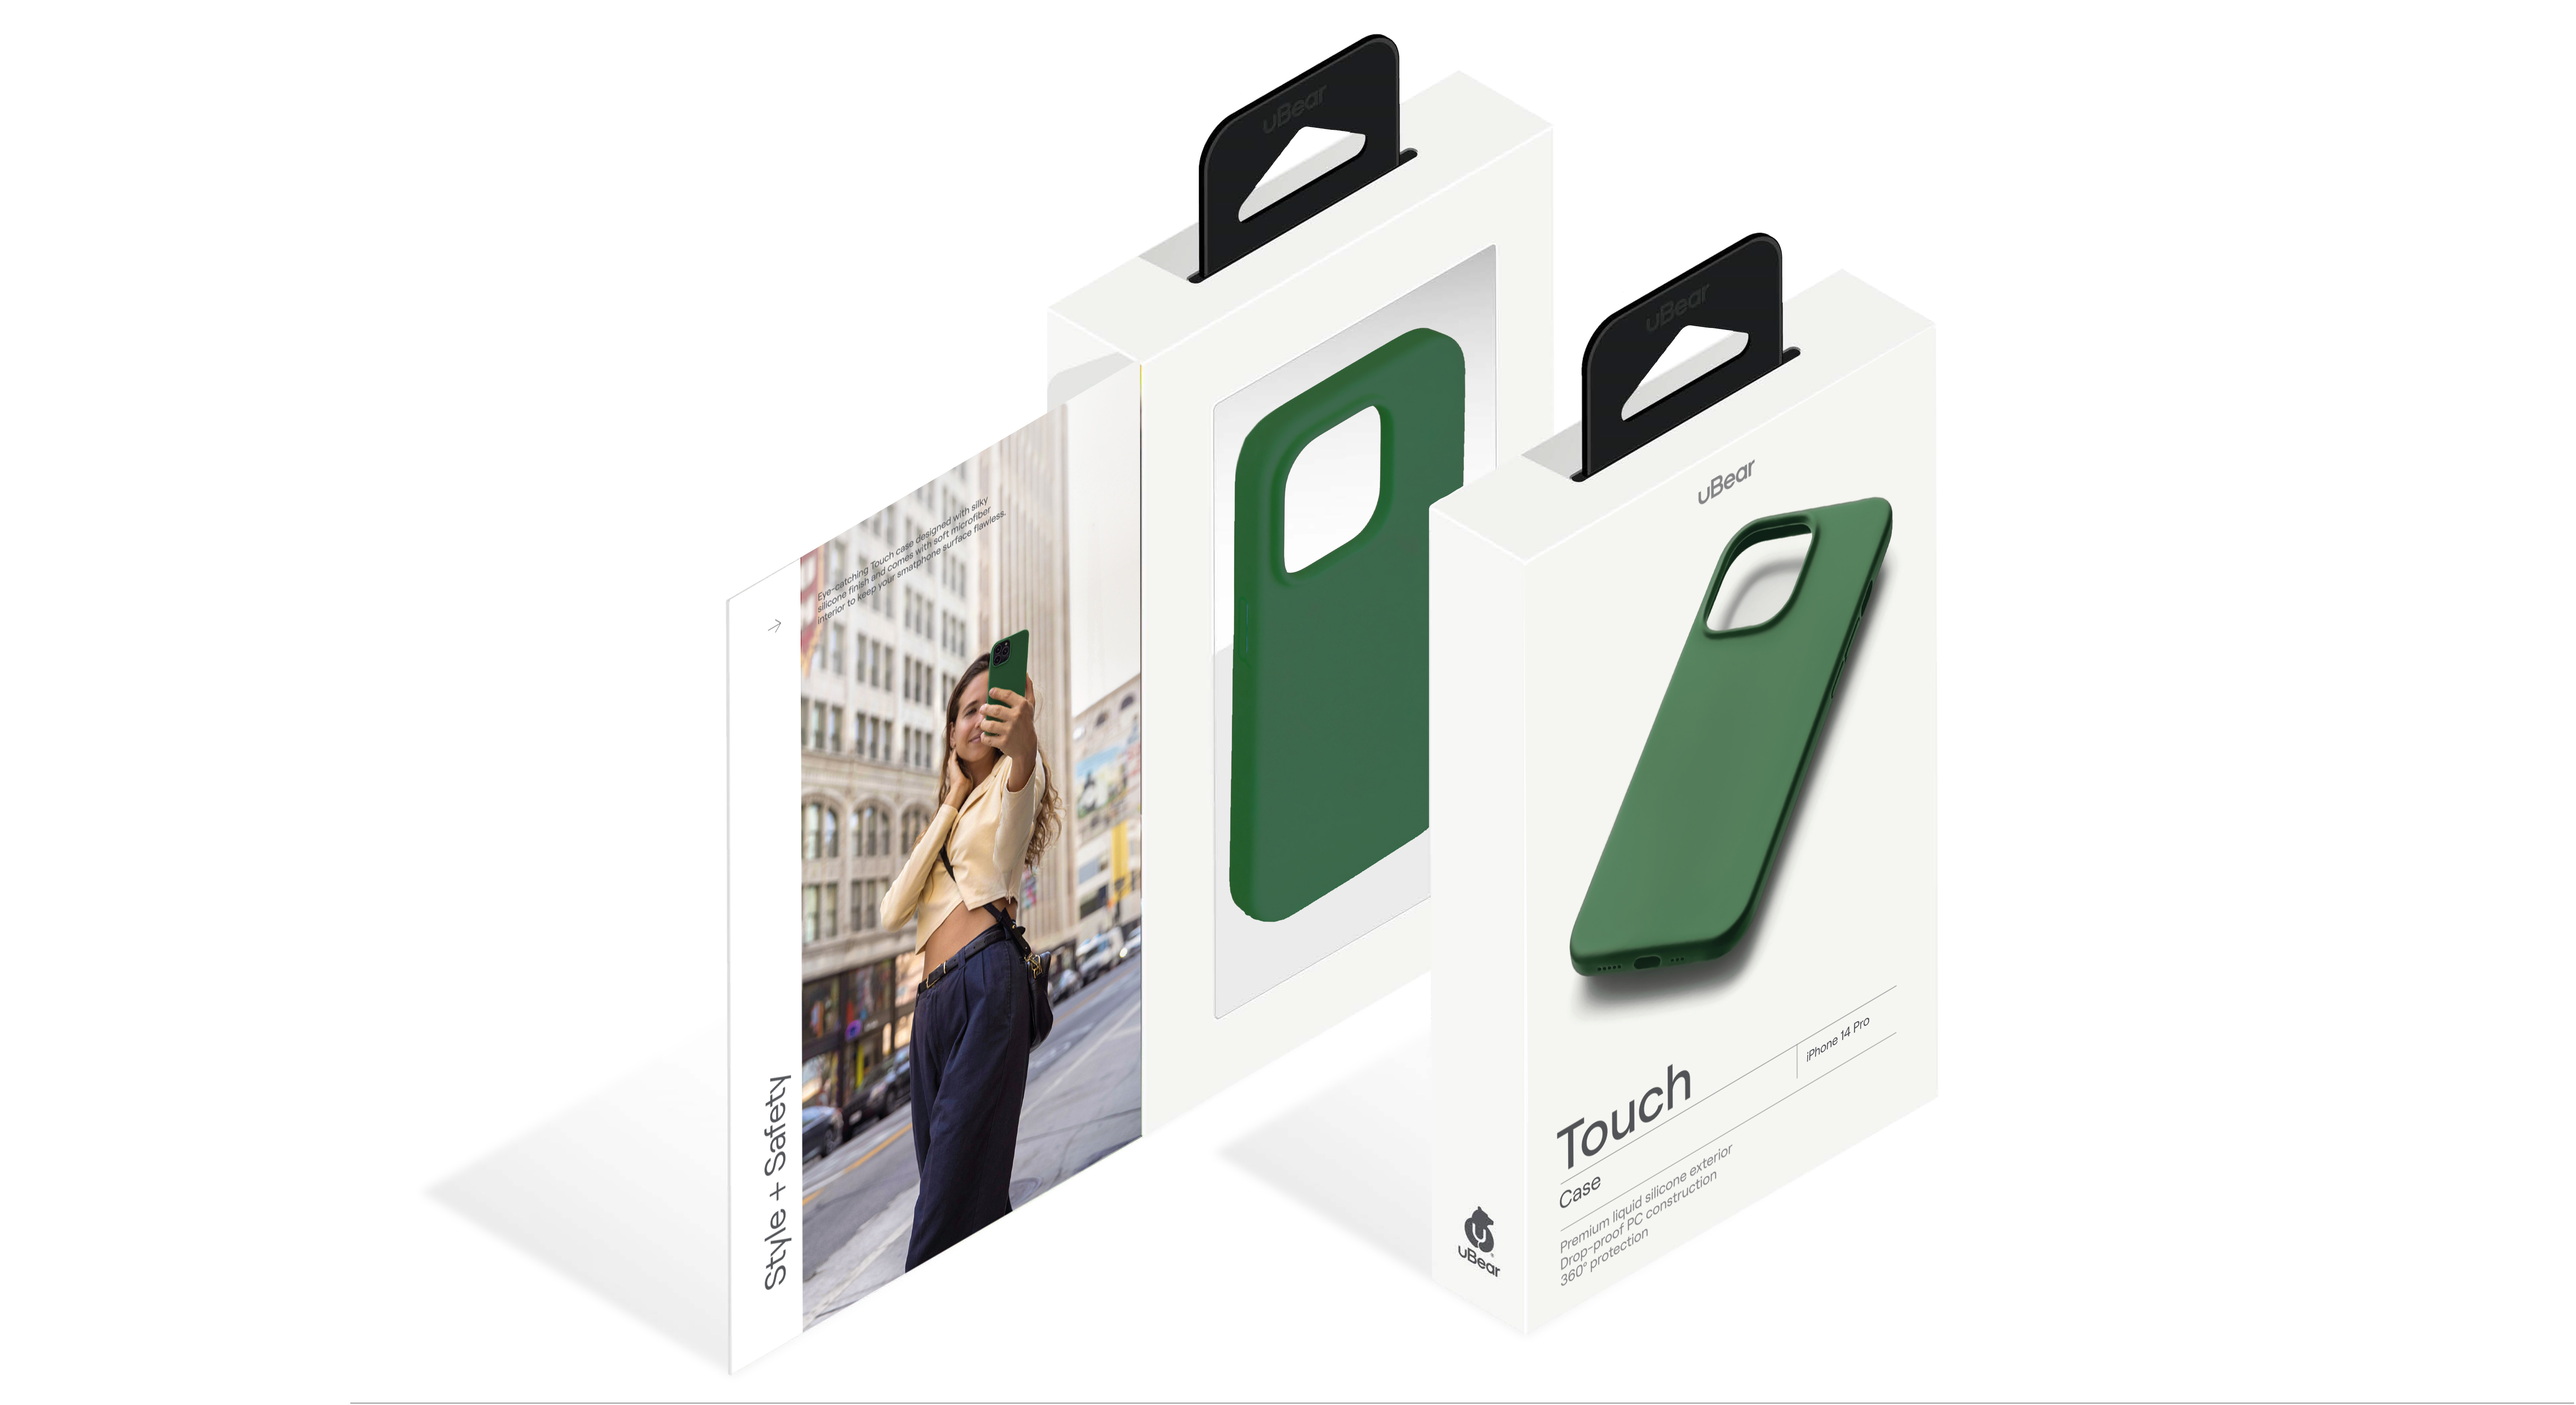 Чехол защитный uBear Touch Case для  iPhone 14 Pro, силикон, софт-тач, зелёный